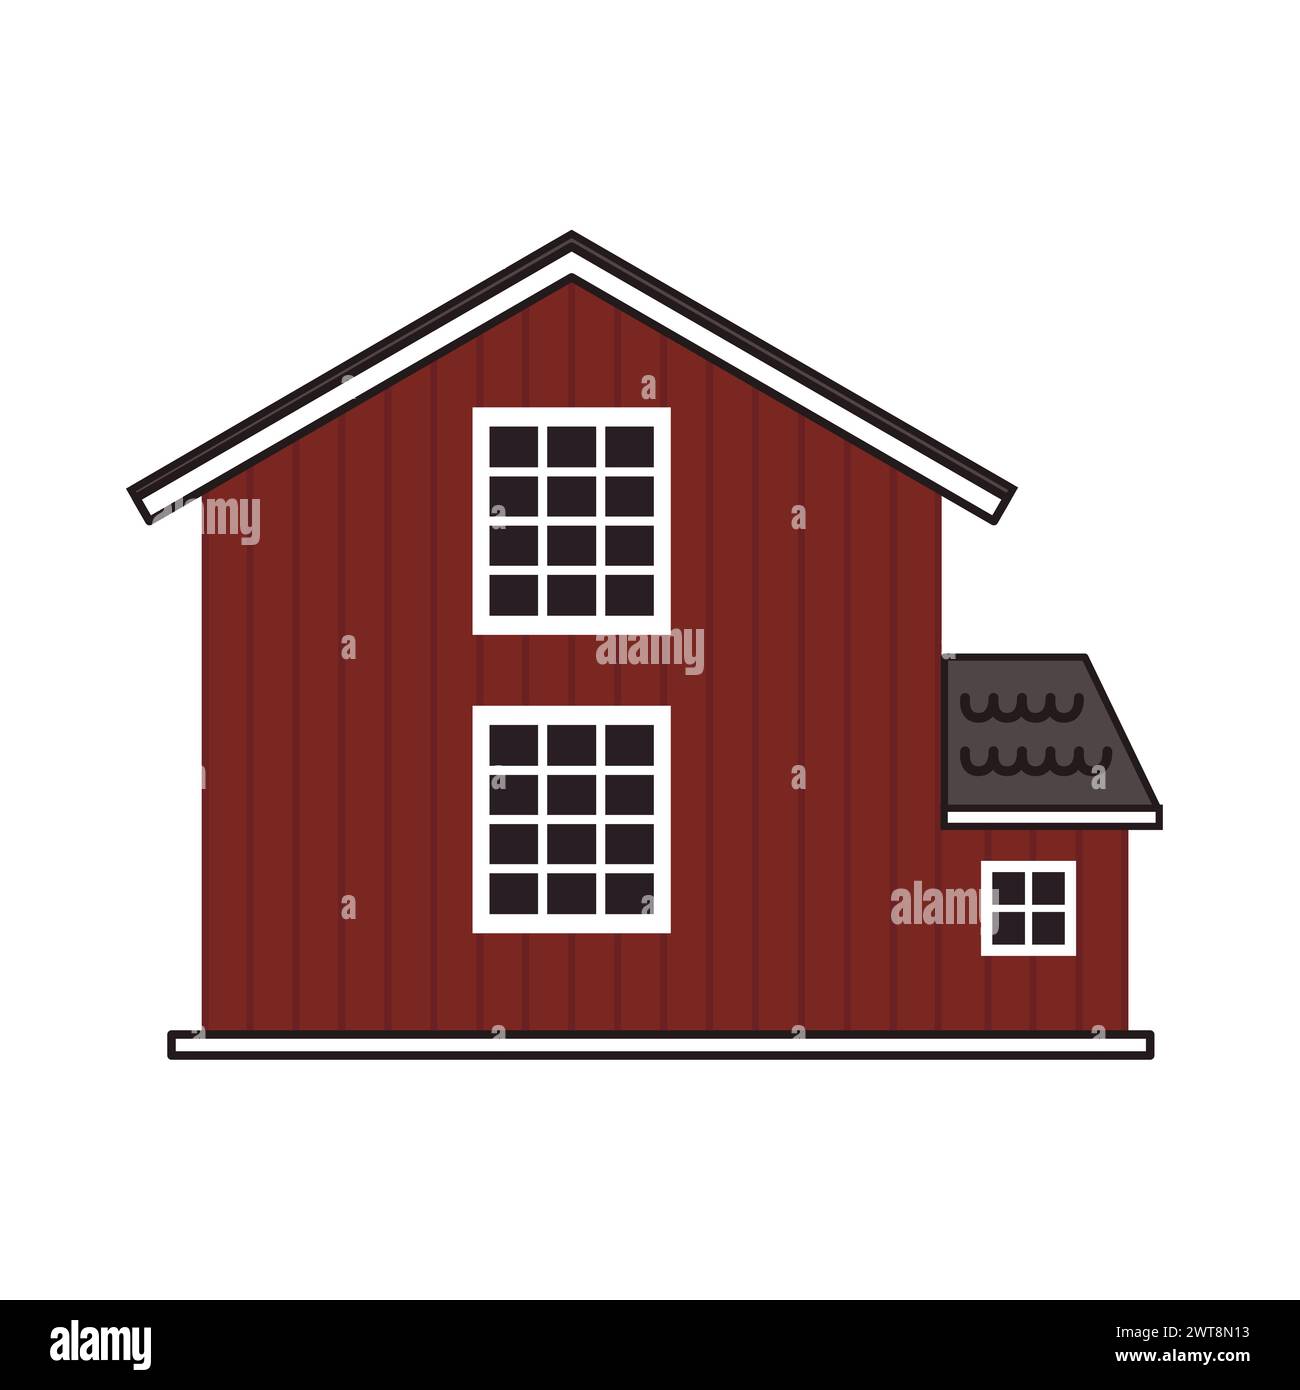 Flaches, rotes Holzscheunenhaus, graues Dach, große Fenster mit Brettern. Vektorumriss isolierte handgezeichnete Illustration auf weißem Hintergrund, Vorderseite Stock Vektor